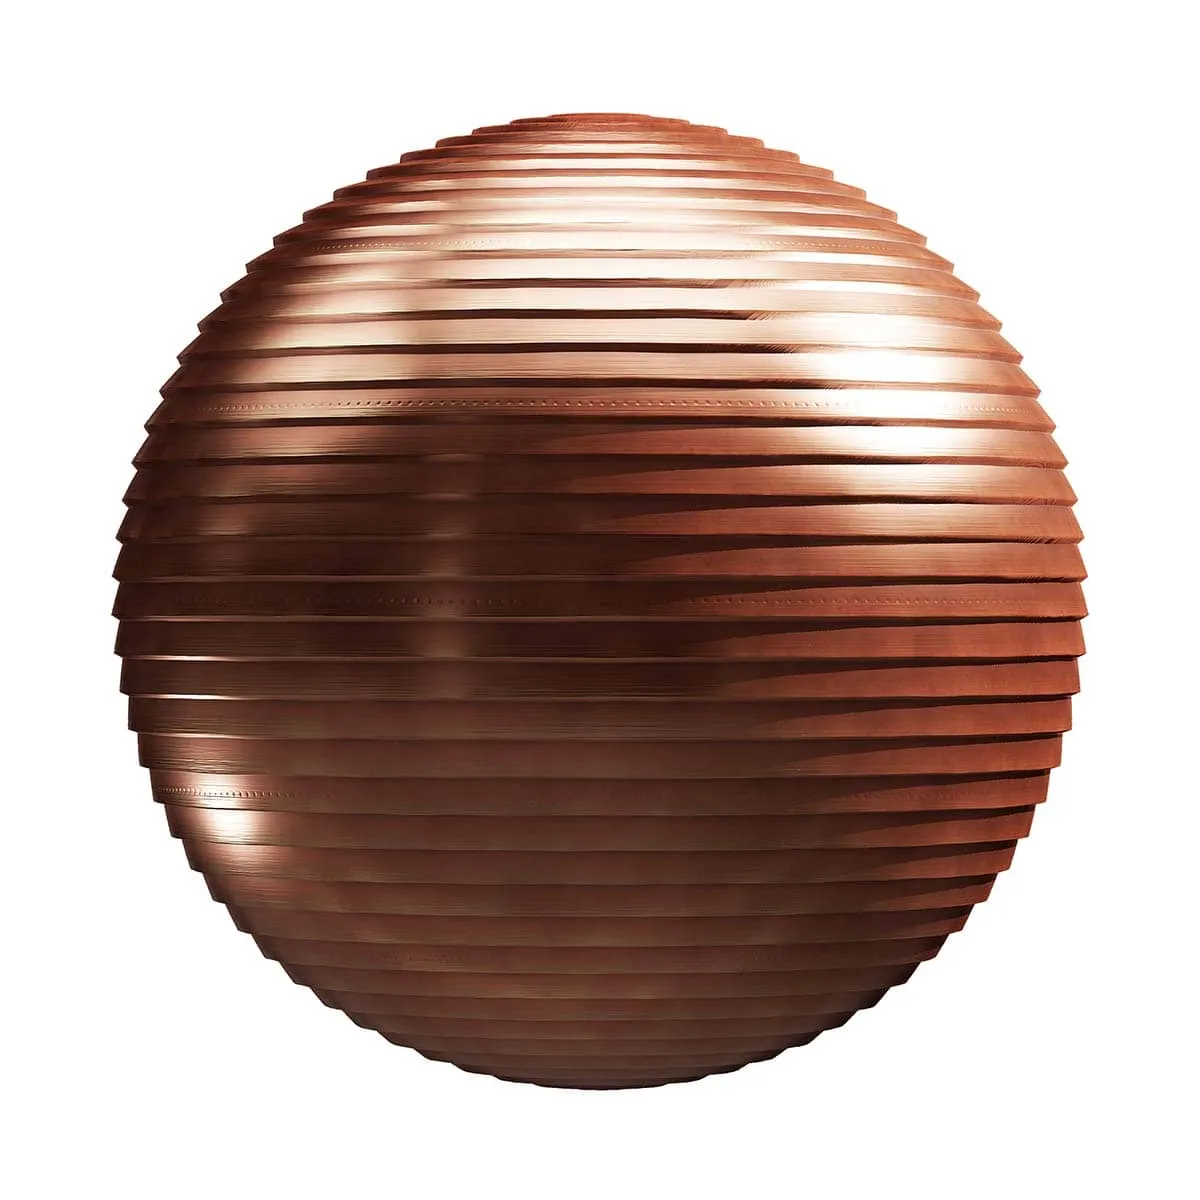 PBR Textures Volume 26 – Metals – 4K – 8K – copper_panels_26_19